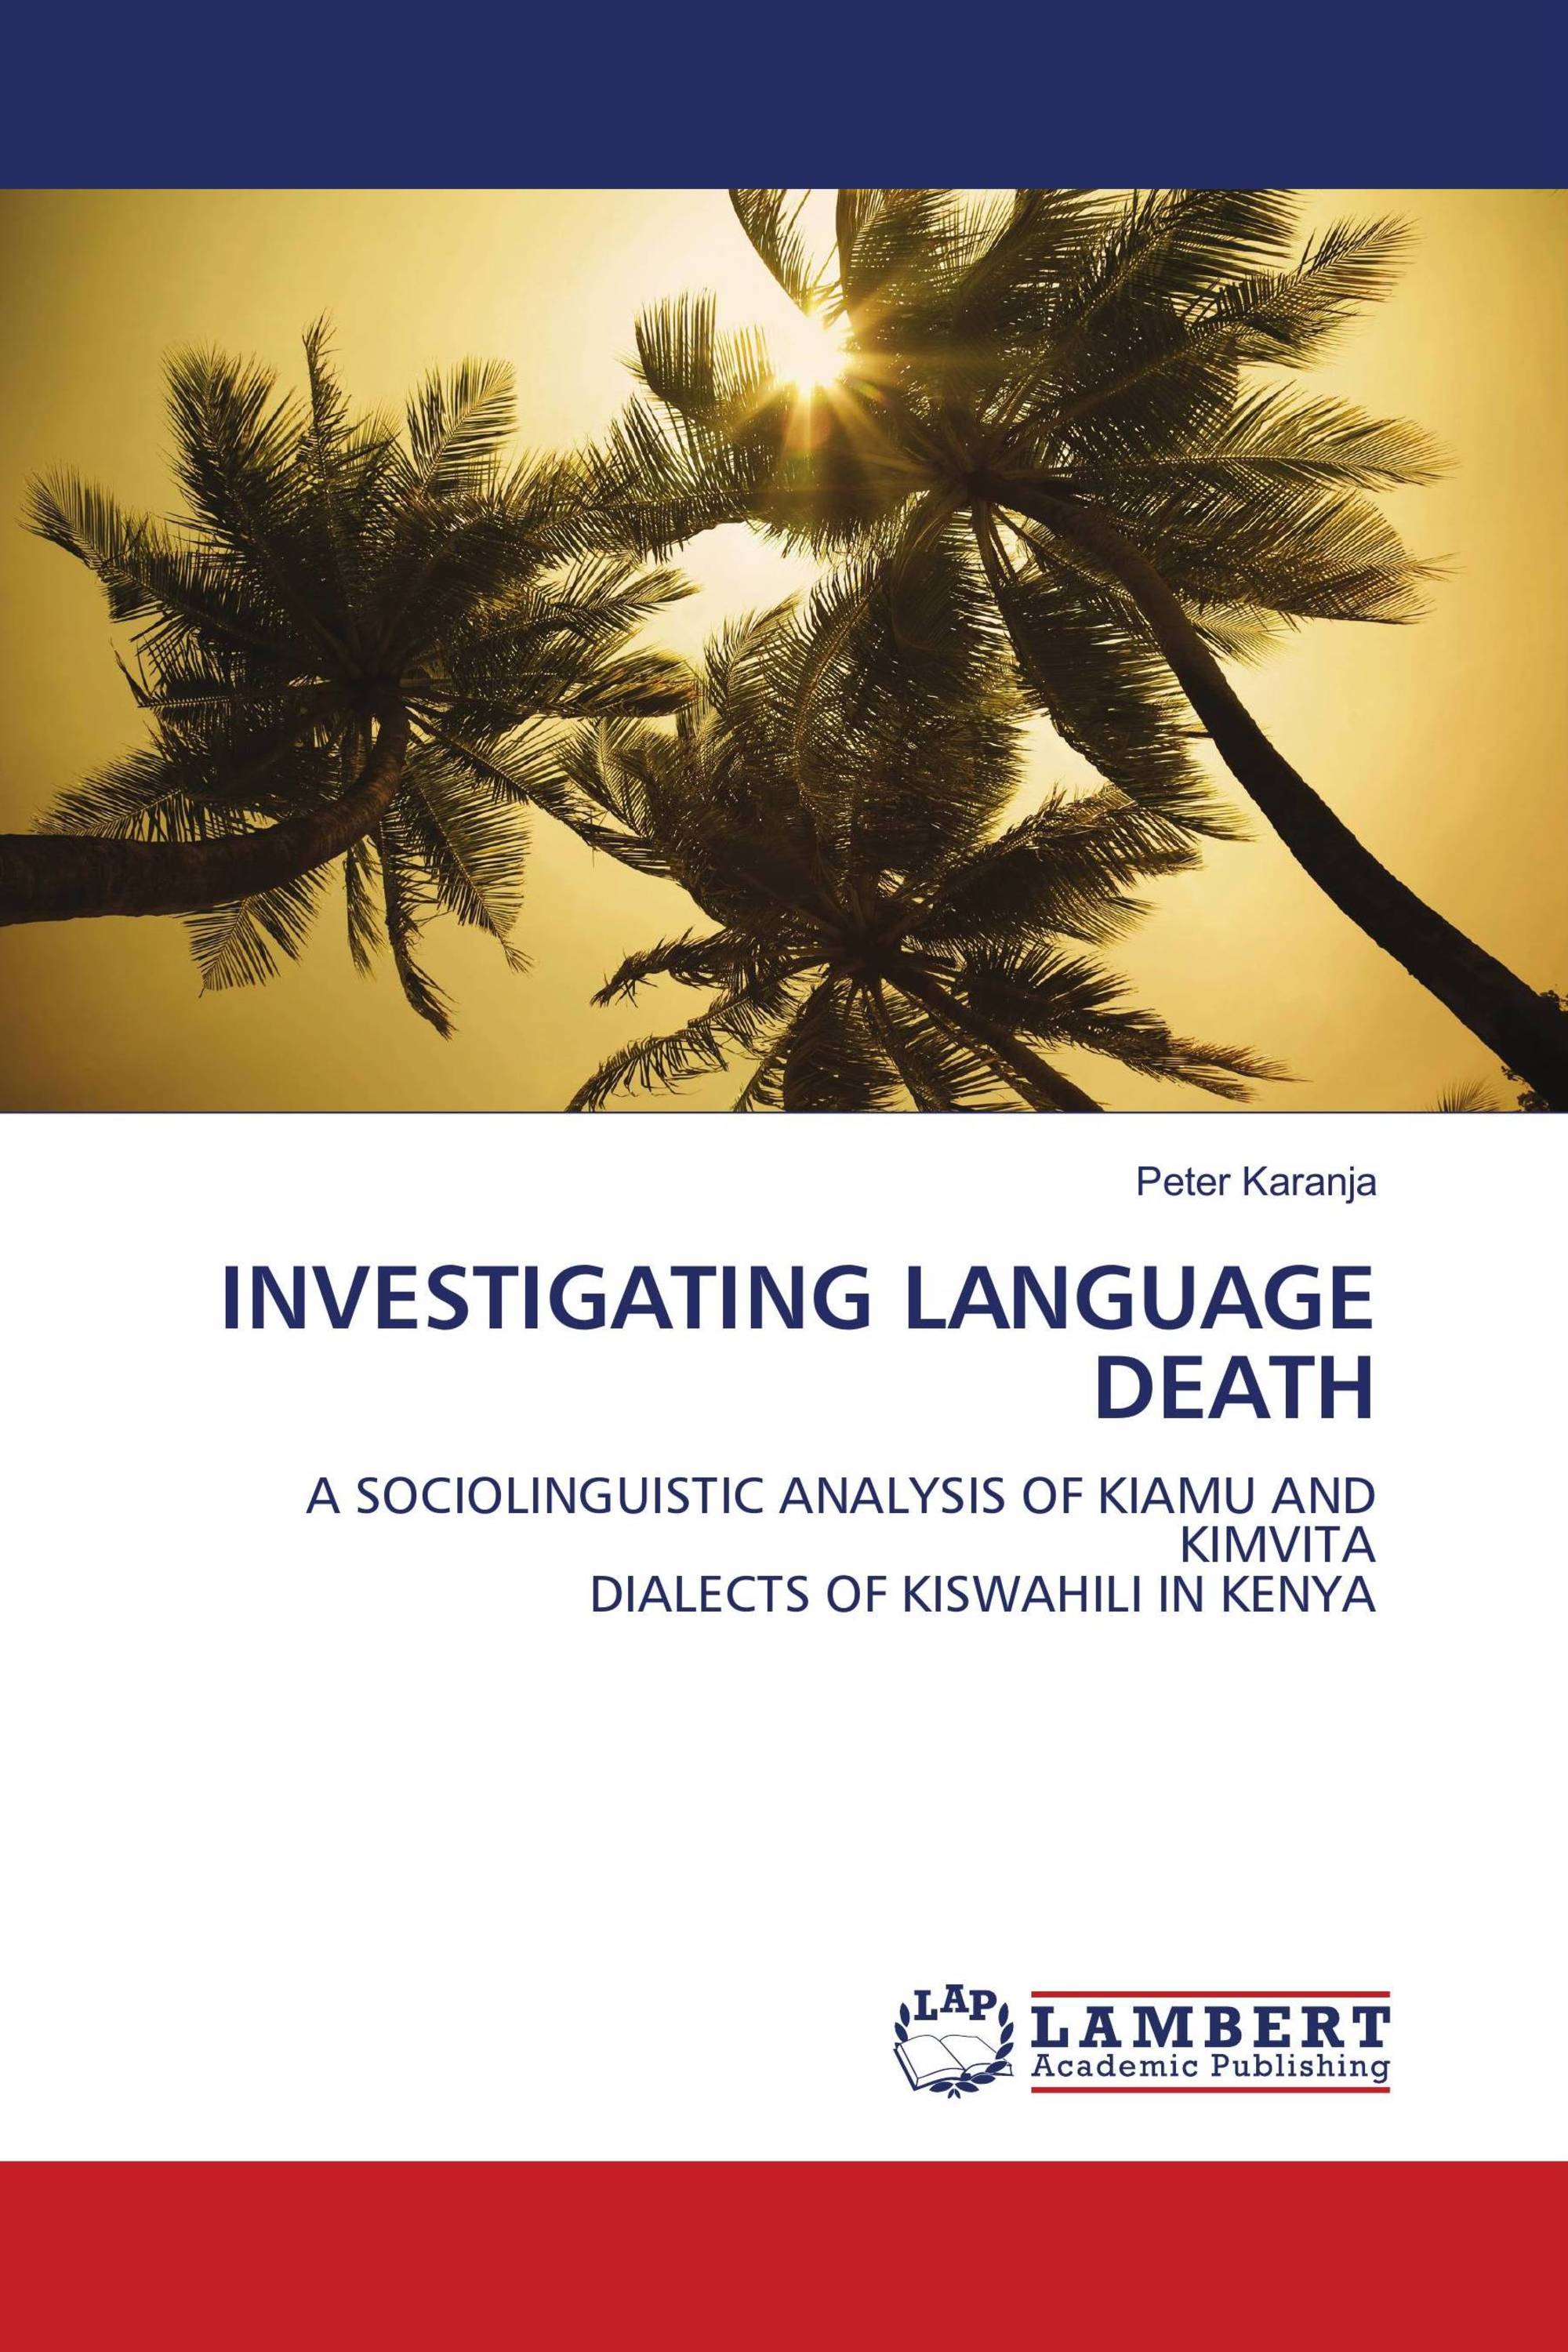 INVESTIGATING LANGUAGE DEATH